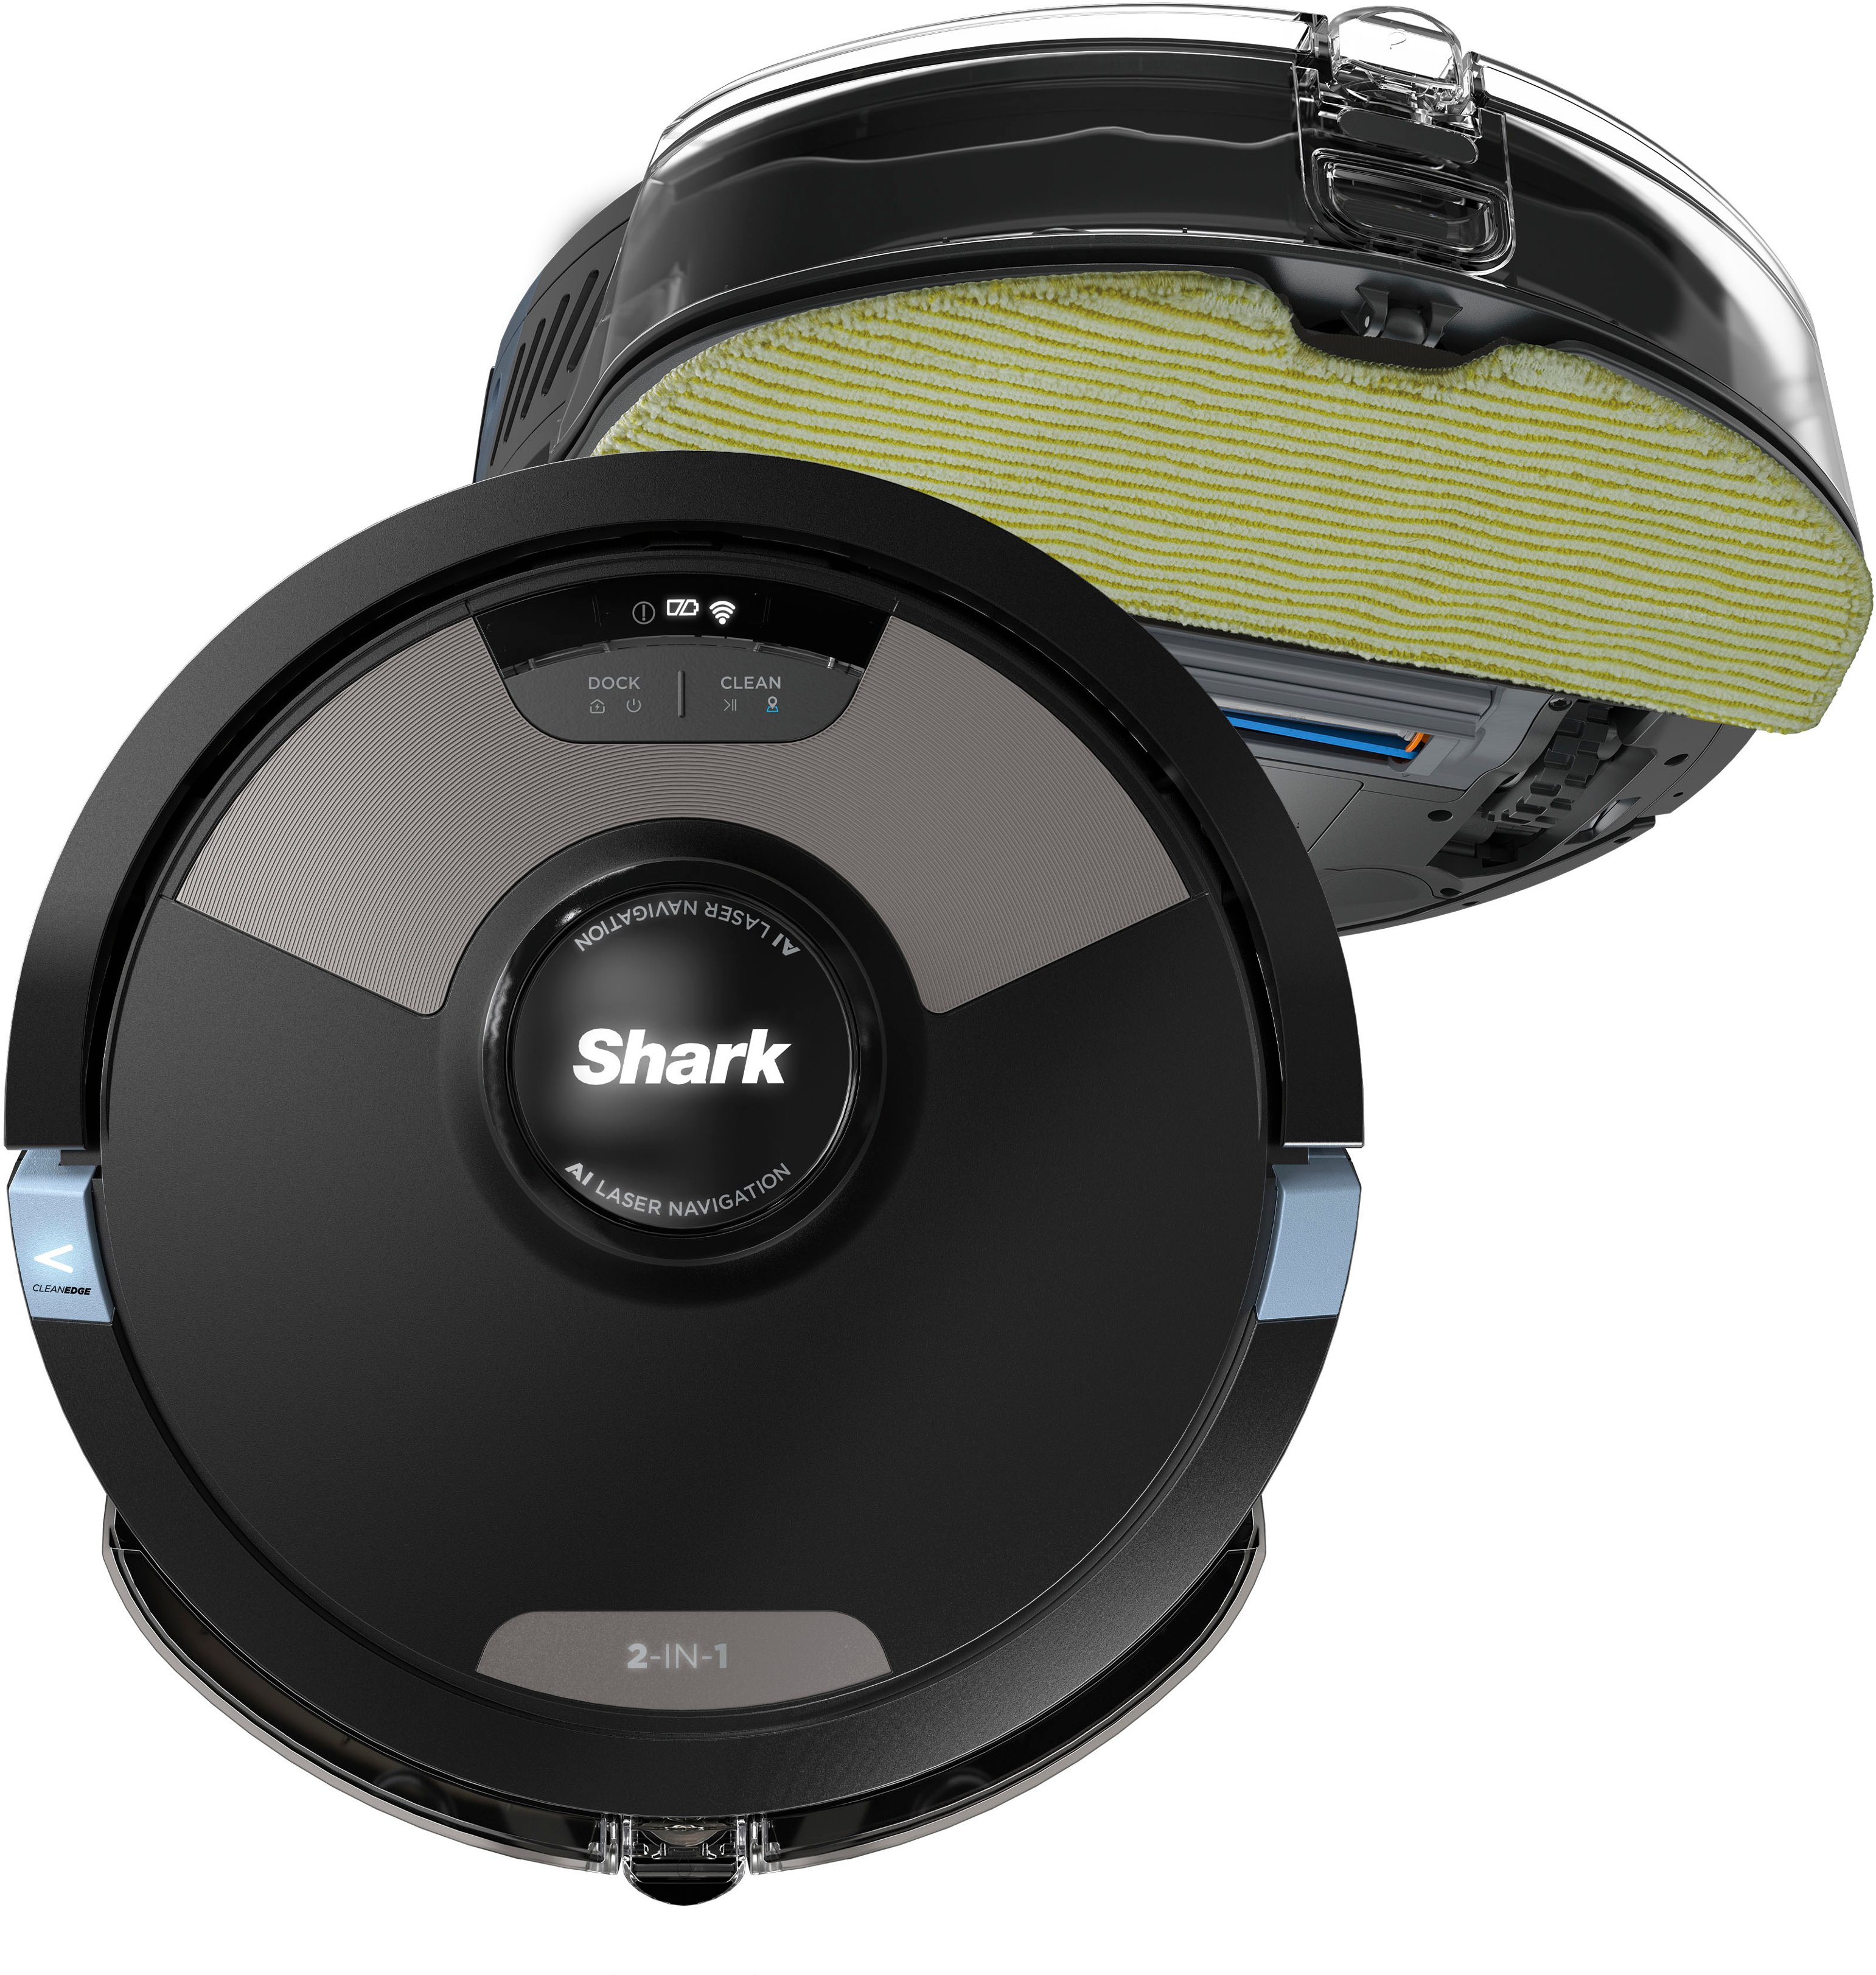 Buy Roborock Q7 Max Vacuum Cleaner Robotic vac/sweeper Black Alexa